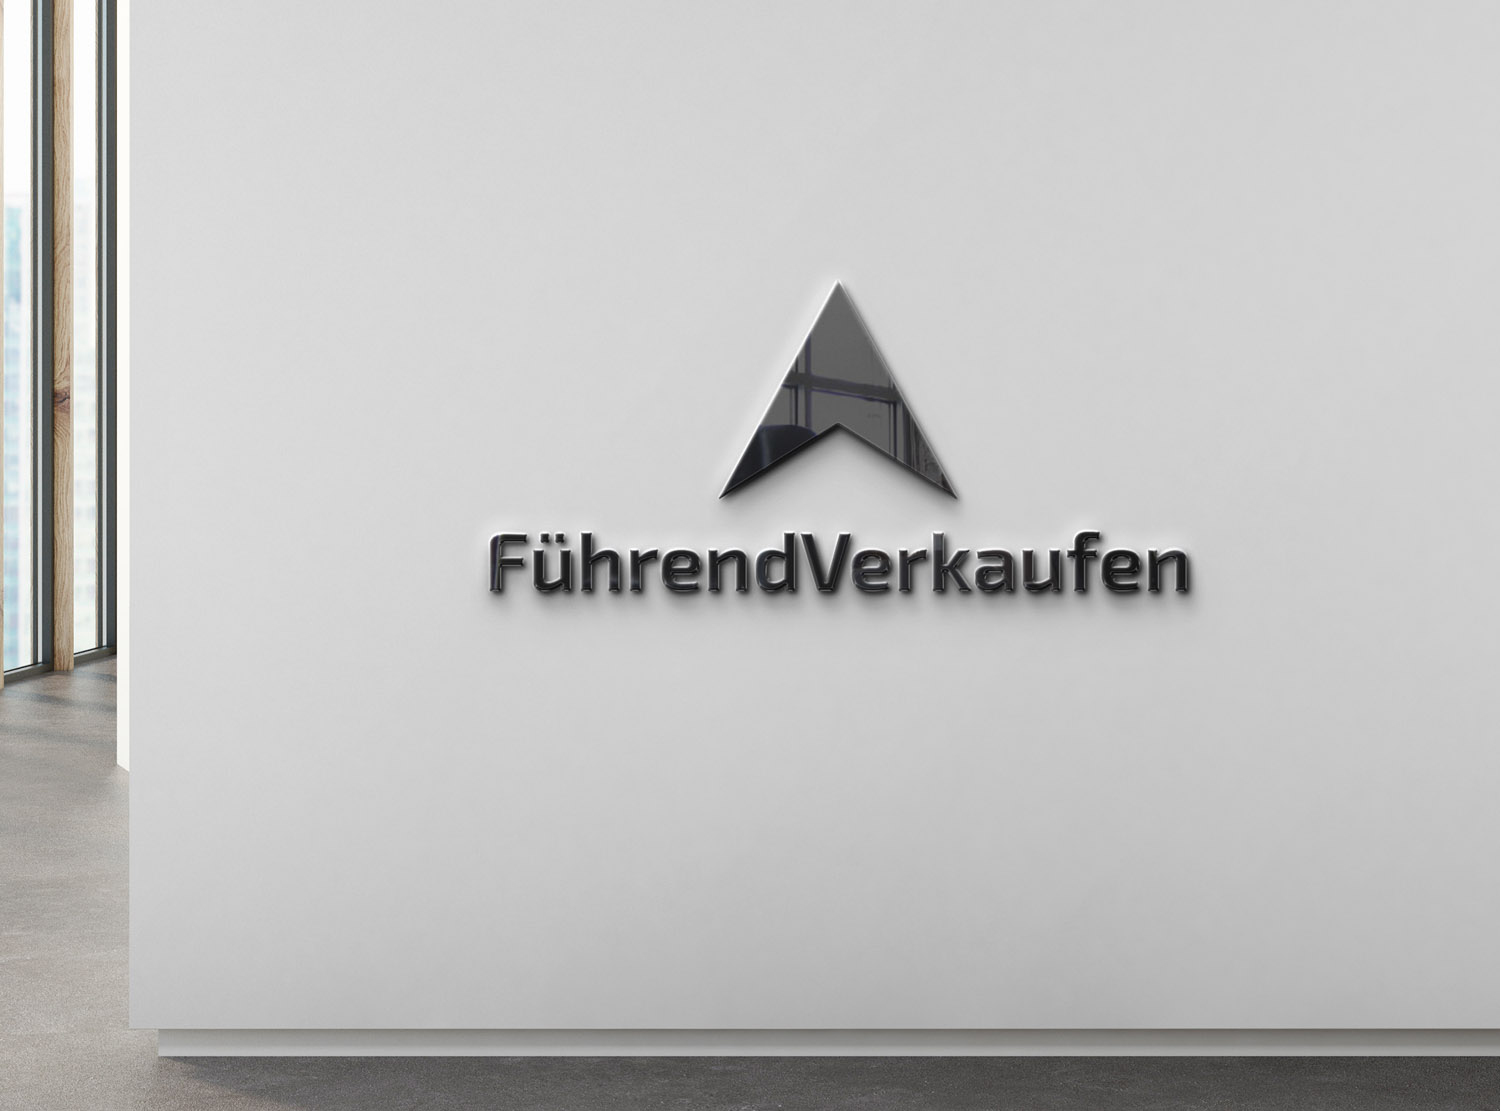 Logodesign für die Firma FührendVerkaufen by LEWEB